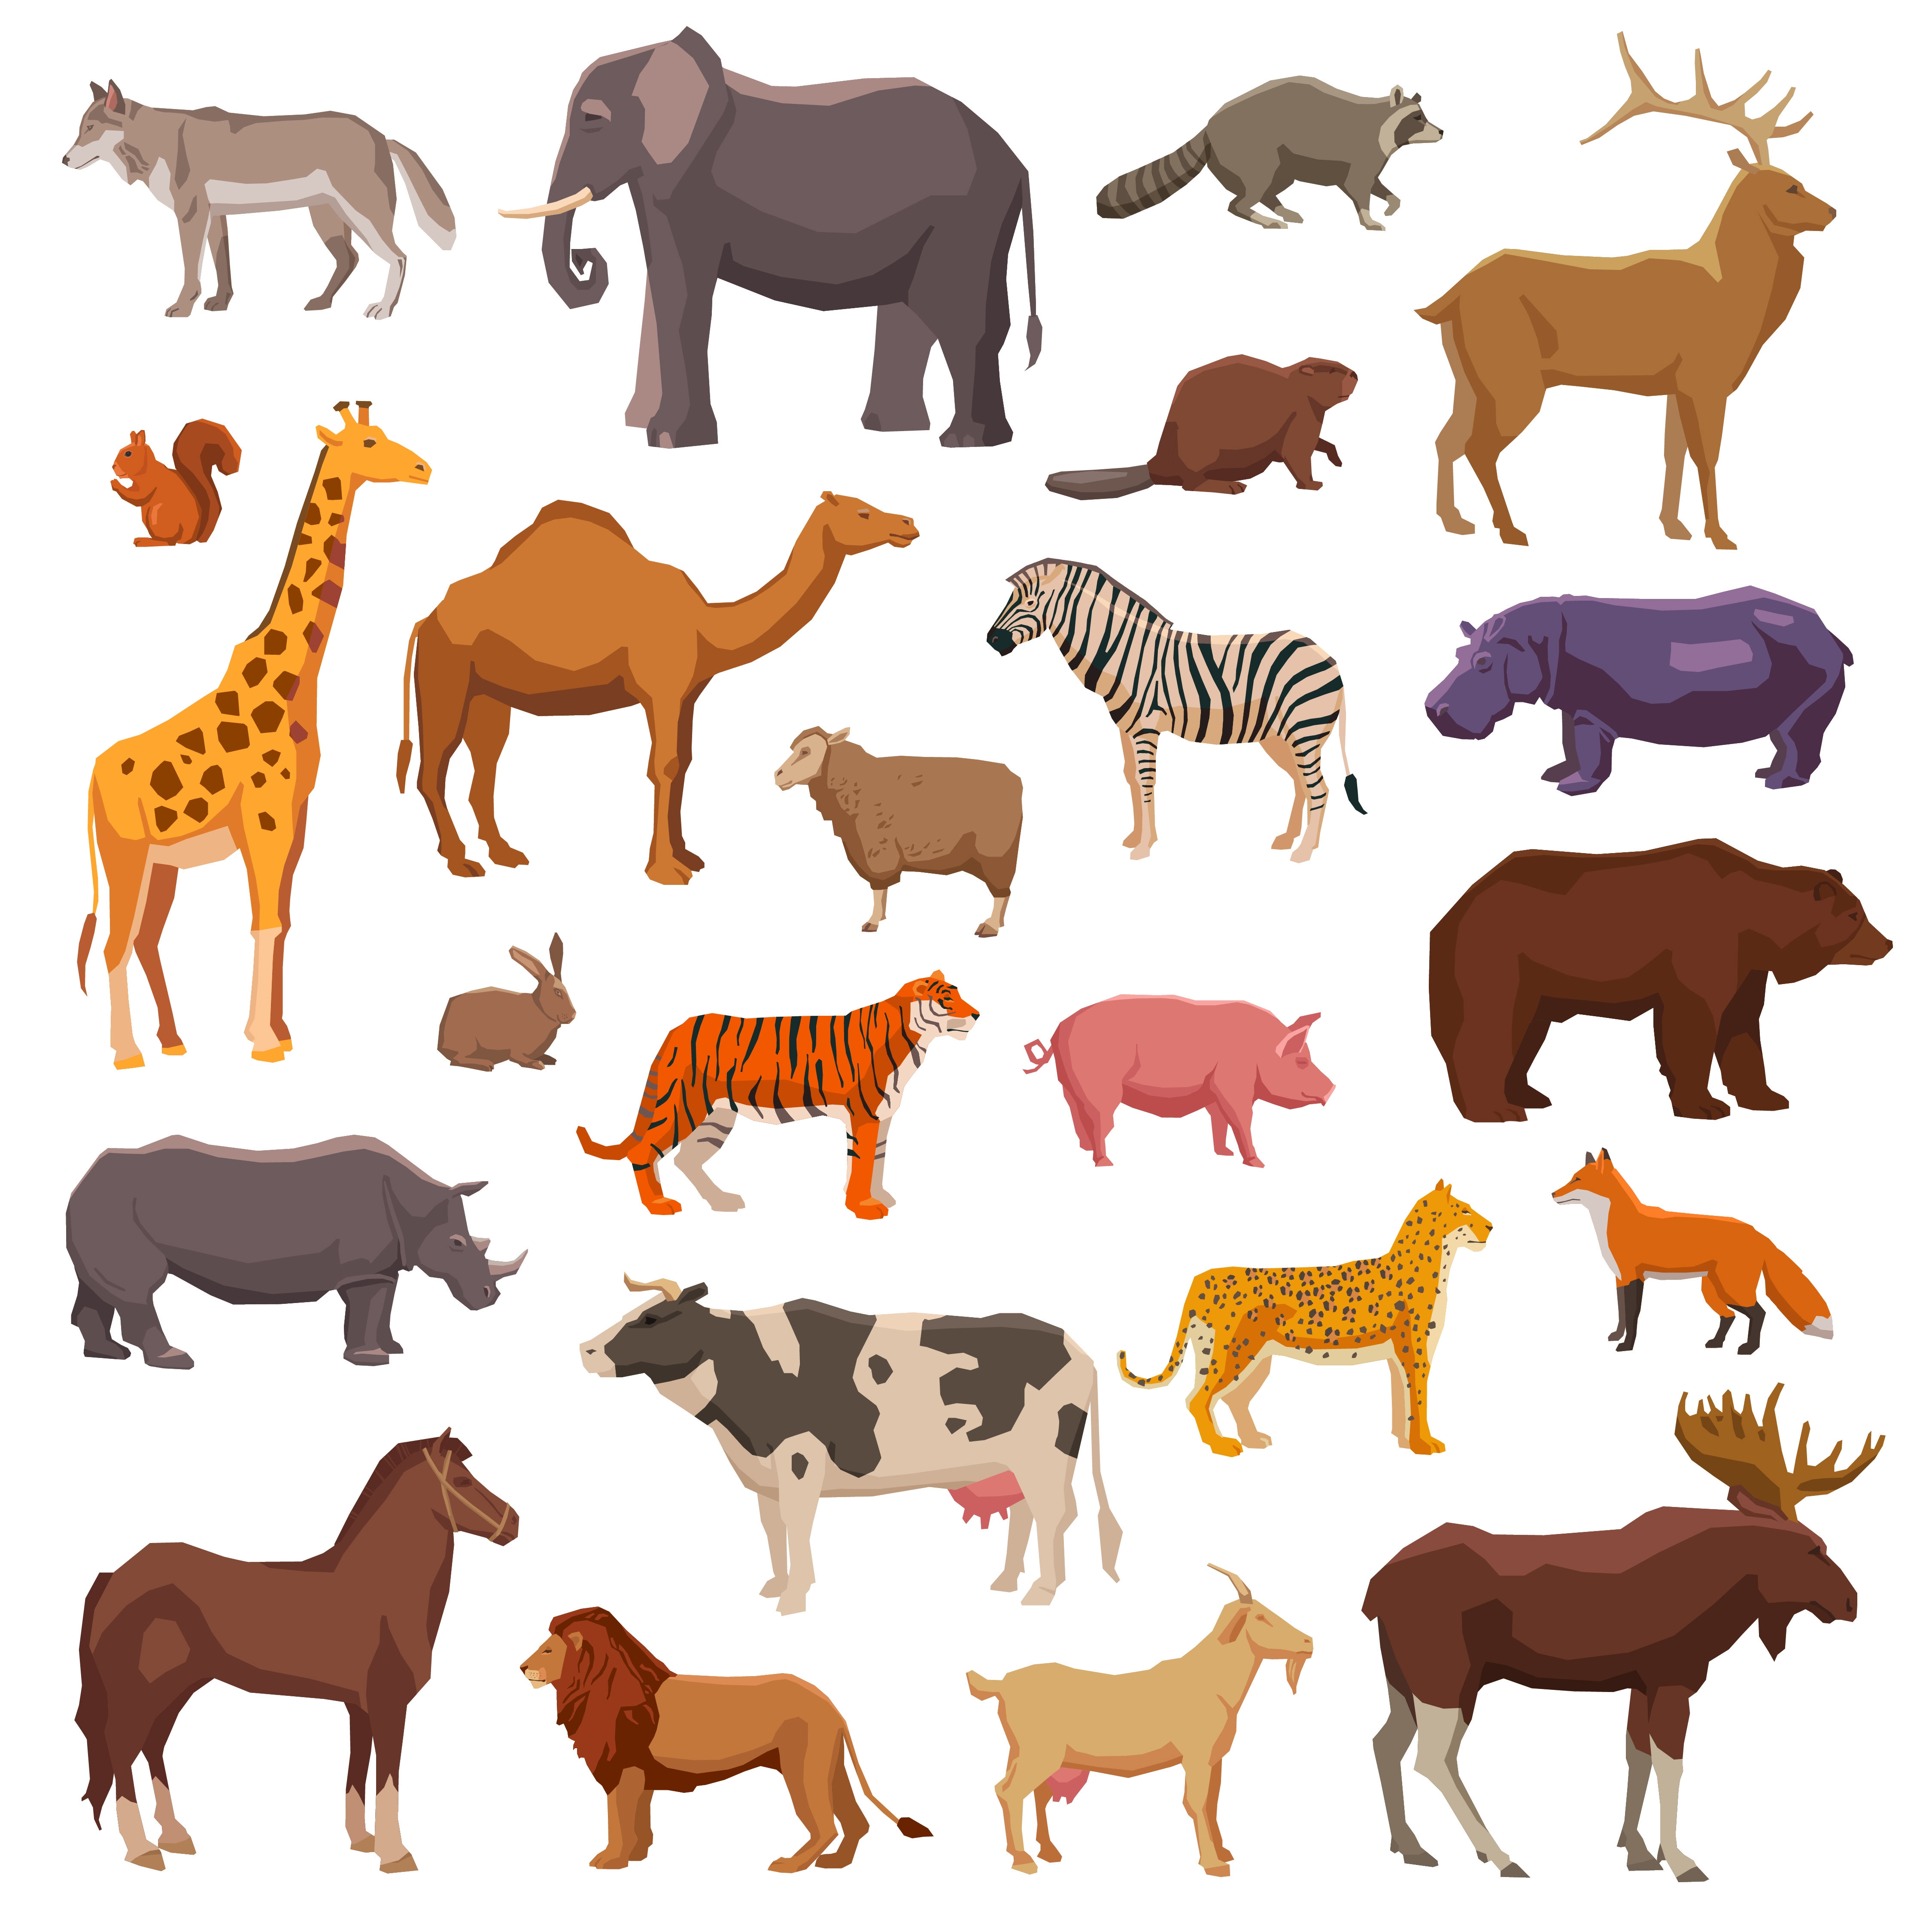 非洲动物名称大全图片